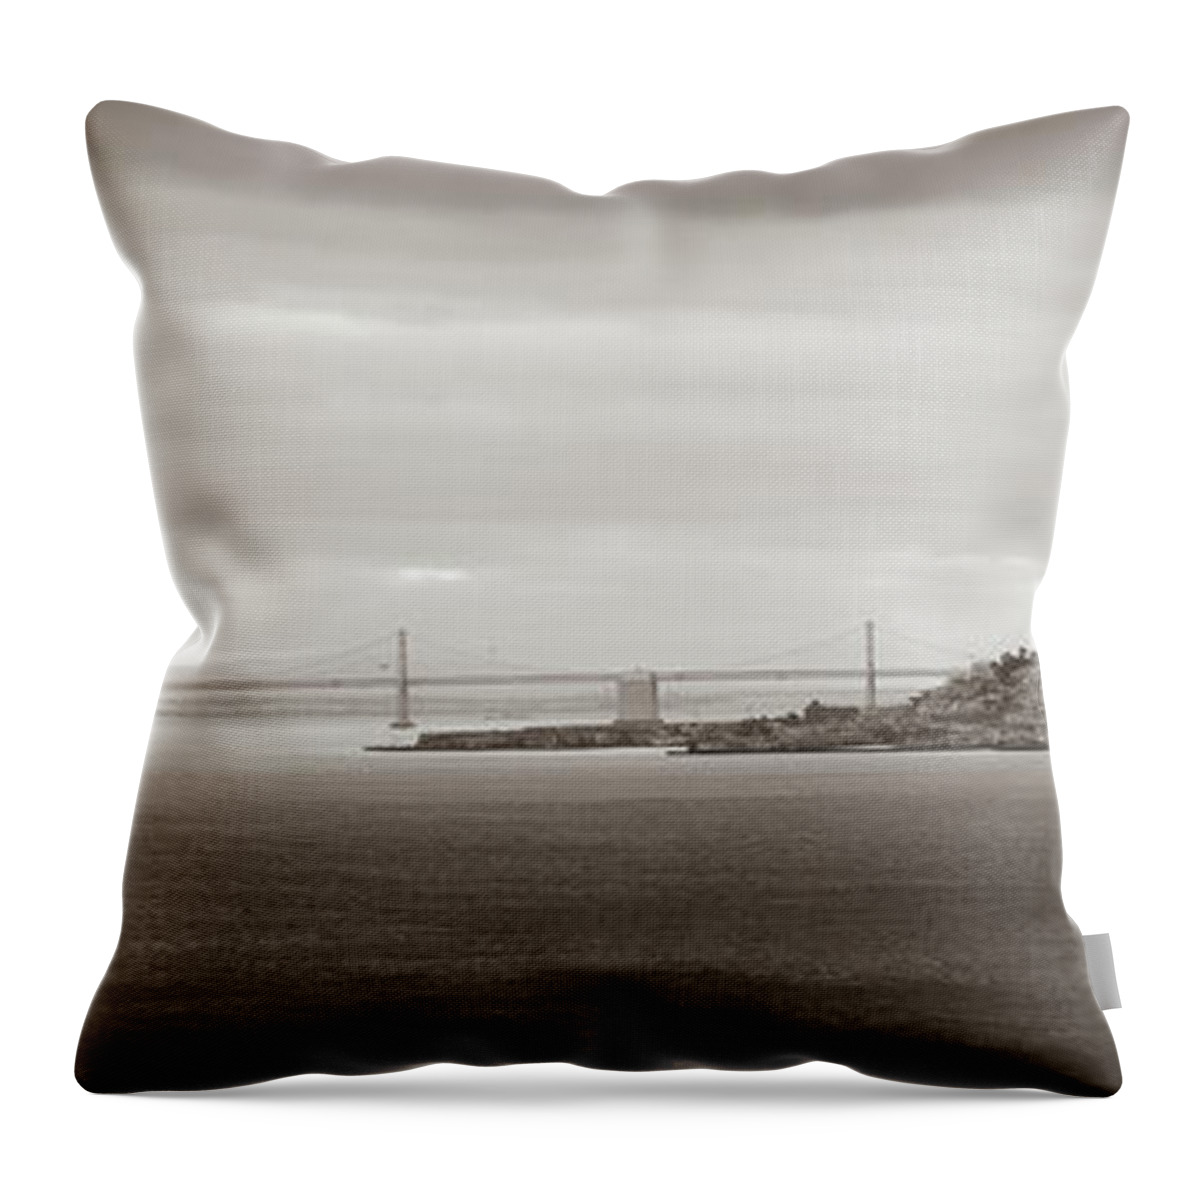 San Francisco Throw Pillow featuring the photograph San Francisco - Oakland California Bay Bridge Panorama In Sepia by Gregory Ballos